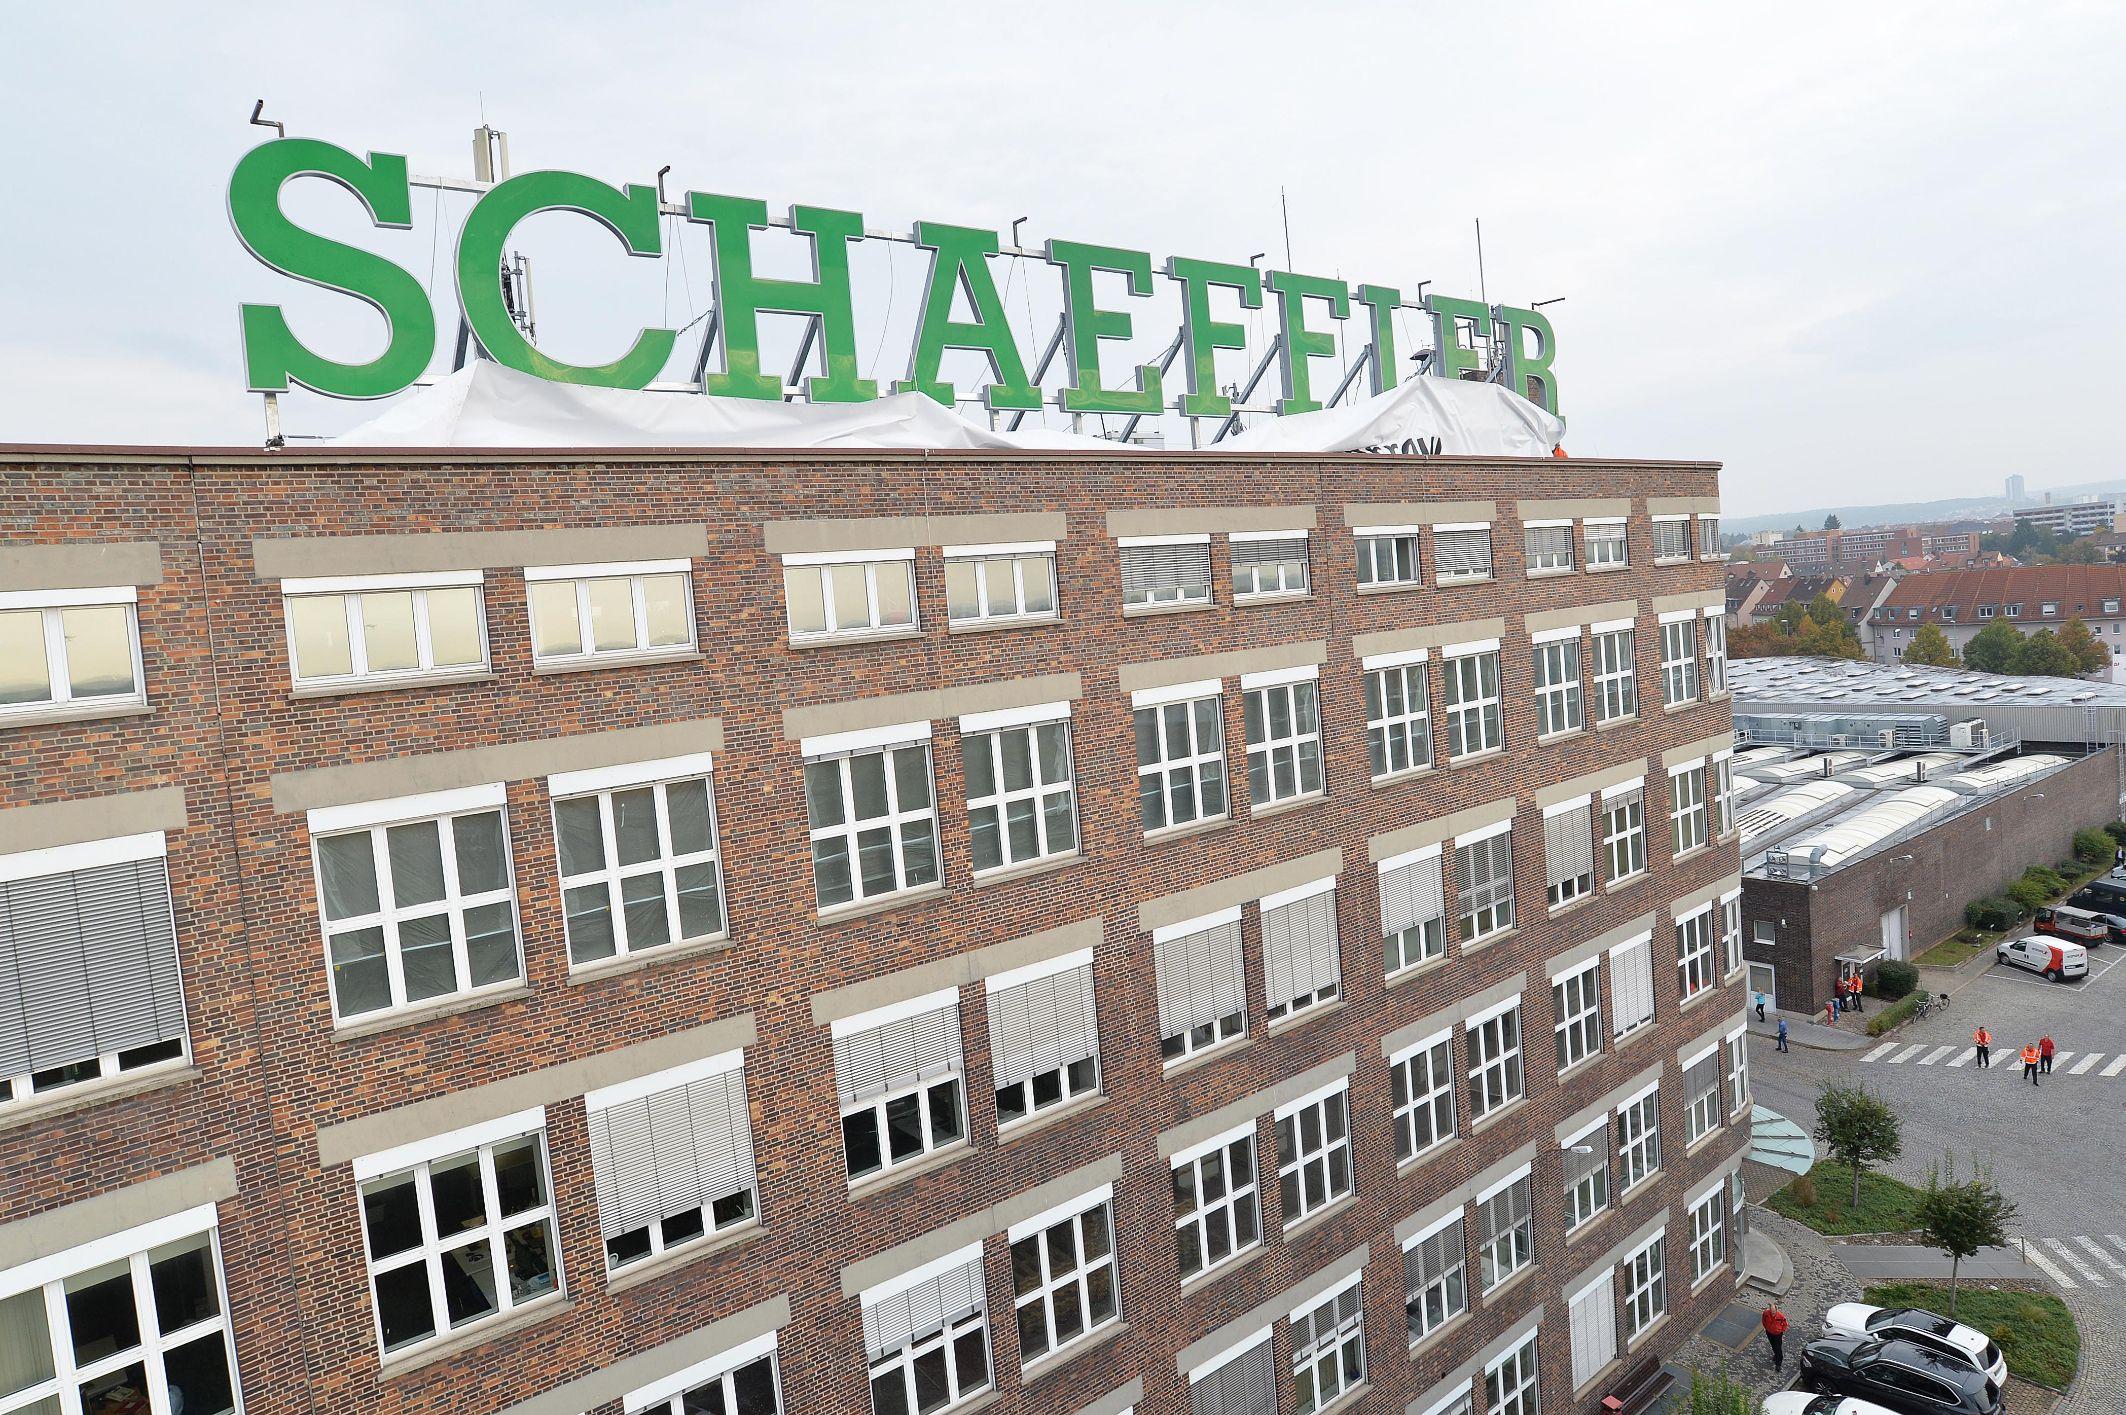 Schaeffler Logo - IDAM Germany | Press Office | Schaeffler Enhances its Brand and ...